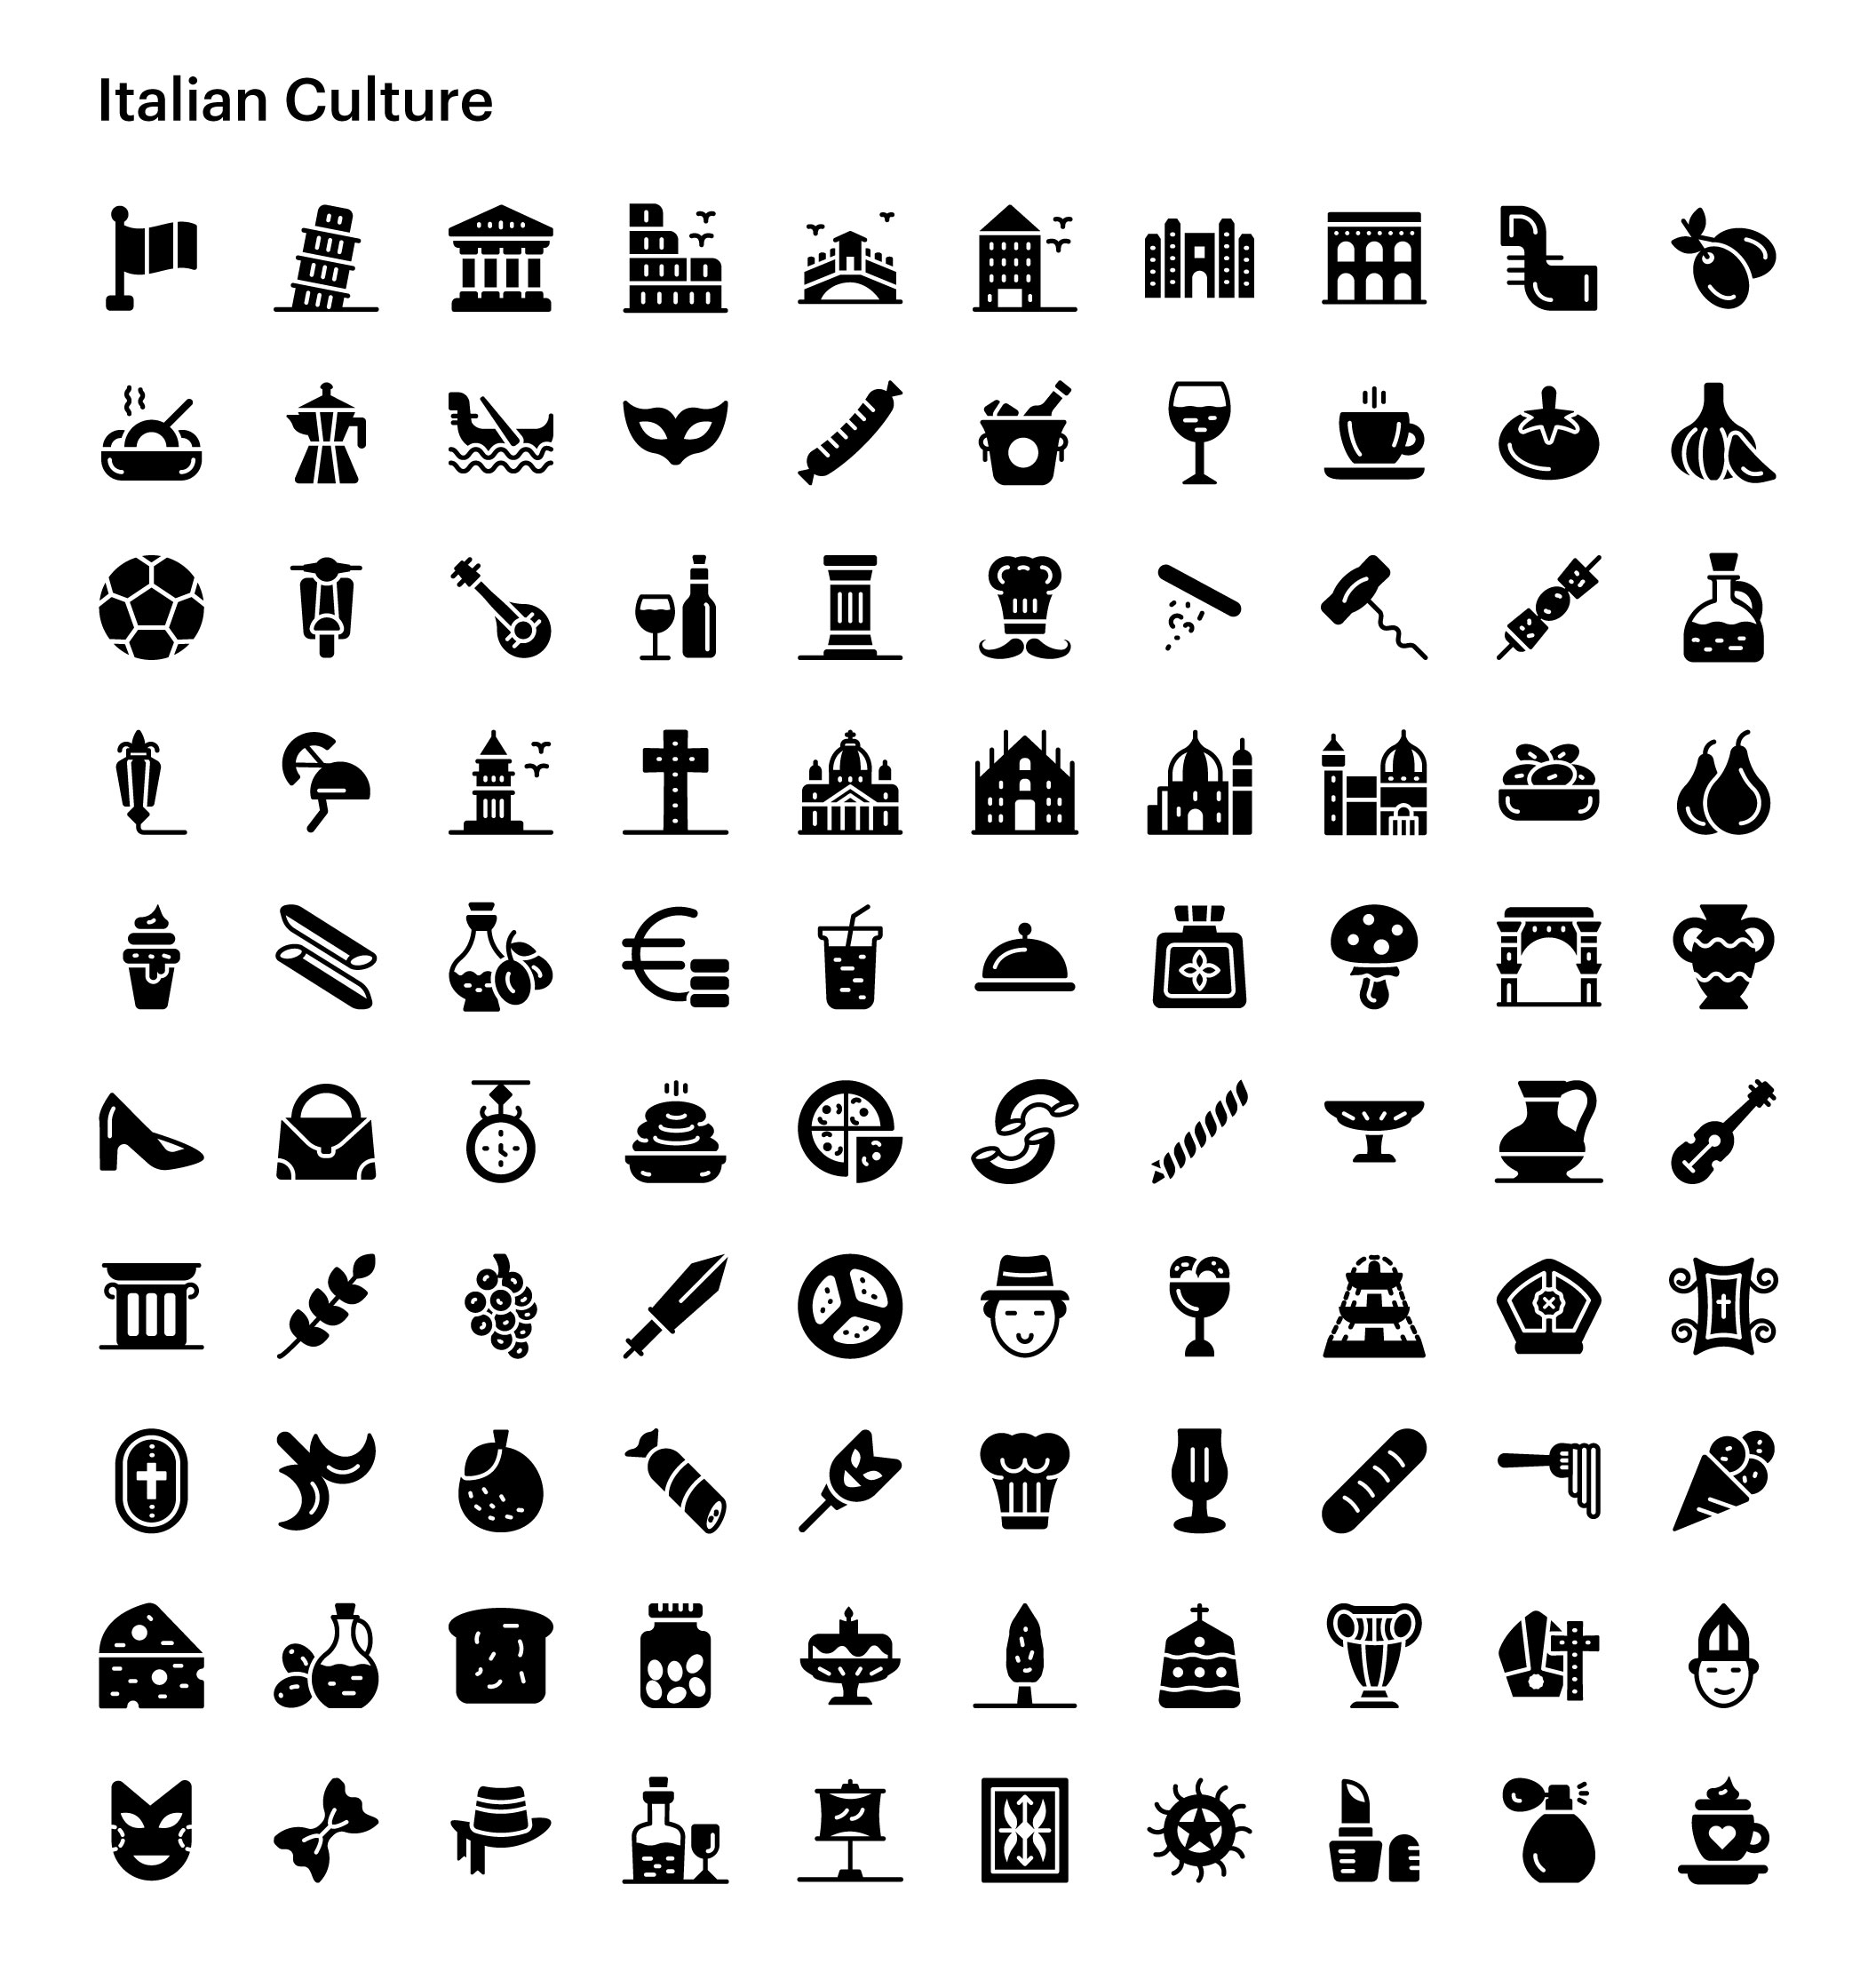 07 1600+多路径样式社区文化金融Icon图标Ai矢量设计素材 1600+ Culture and Communities Vector Icons